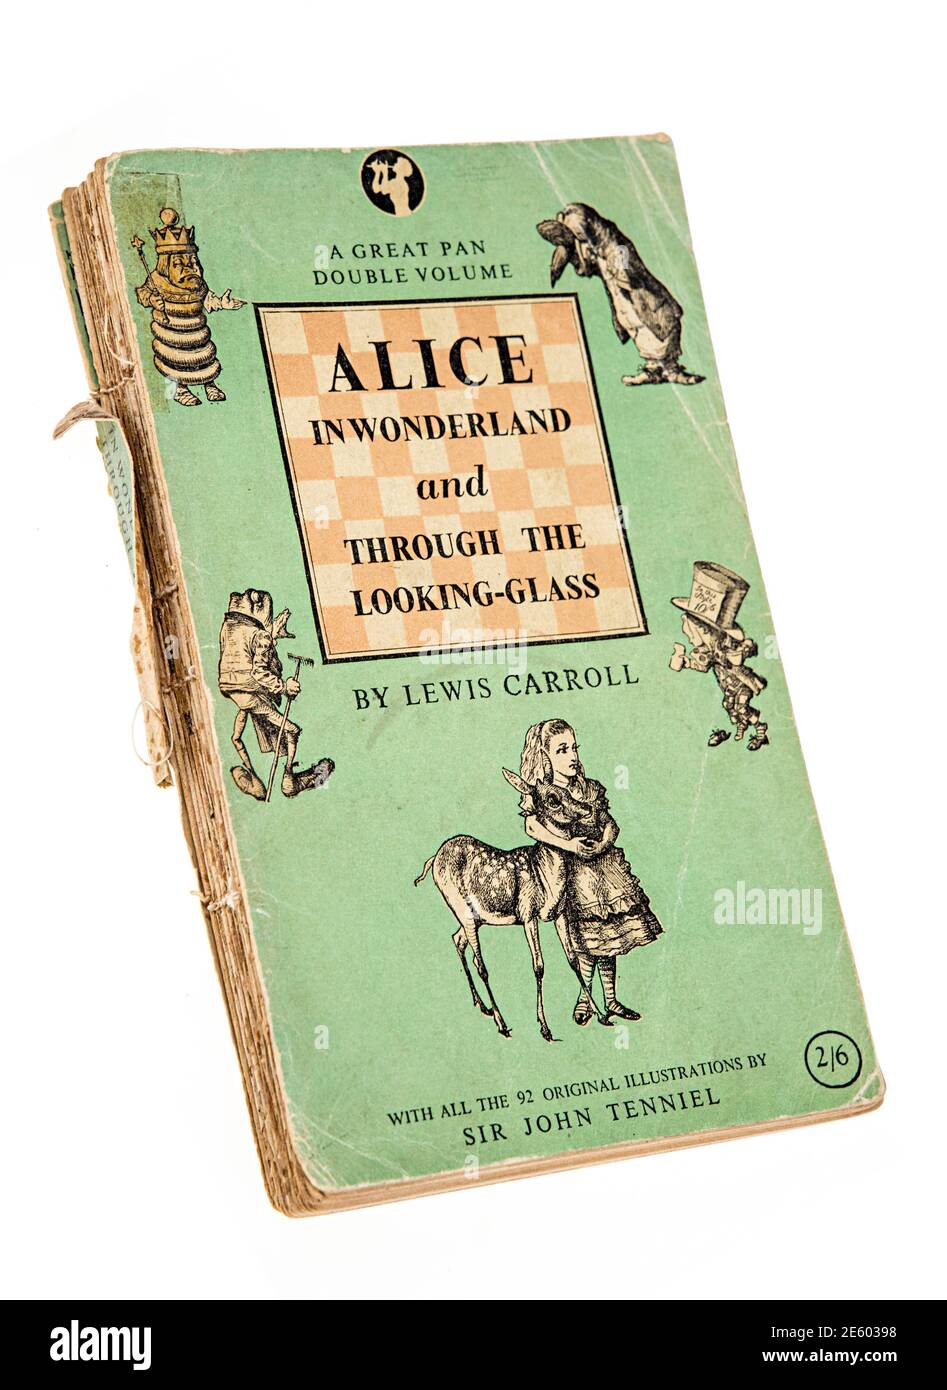 Alice im Wunderland und durch das Looking Glass Taschenbuch Von Lewis Carroll veröffentlicht von Pan in 1947 Stockfoto